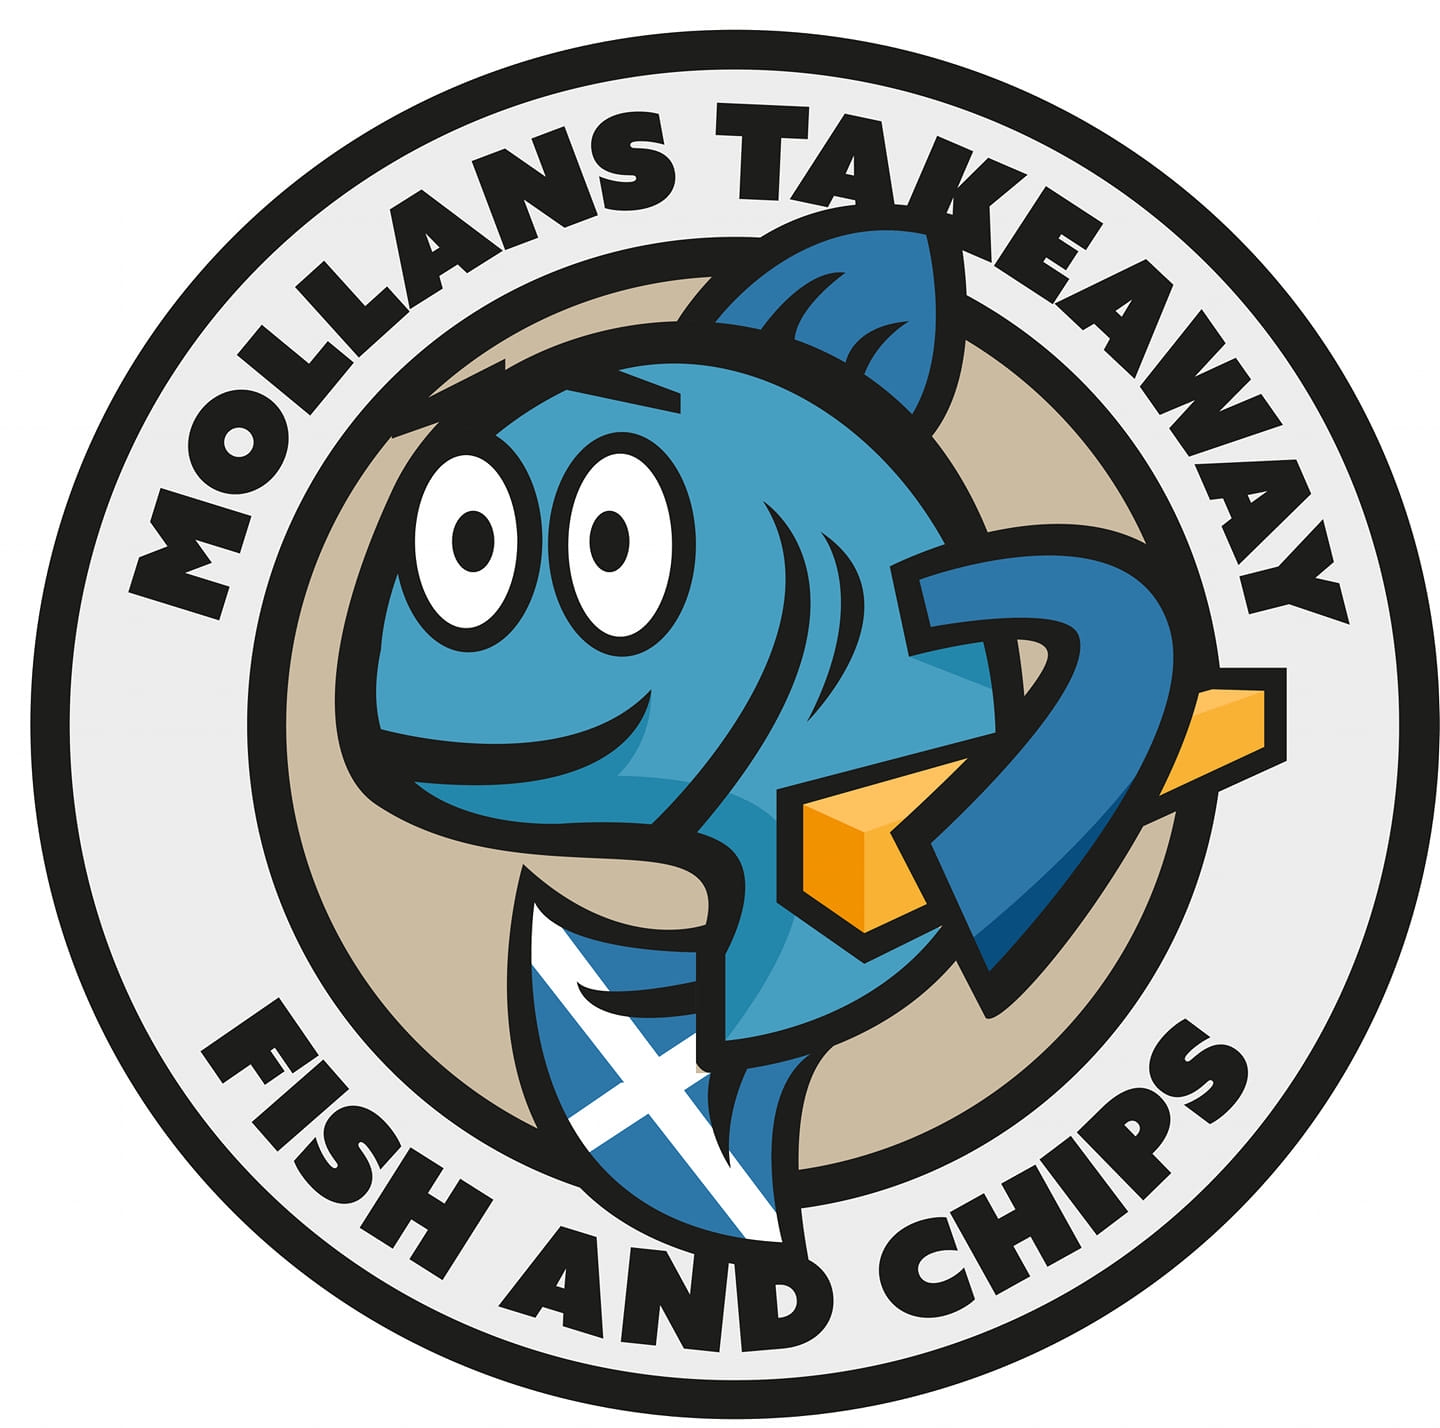 Mollans Takeaway logo